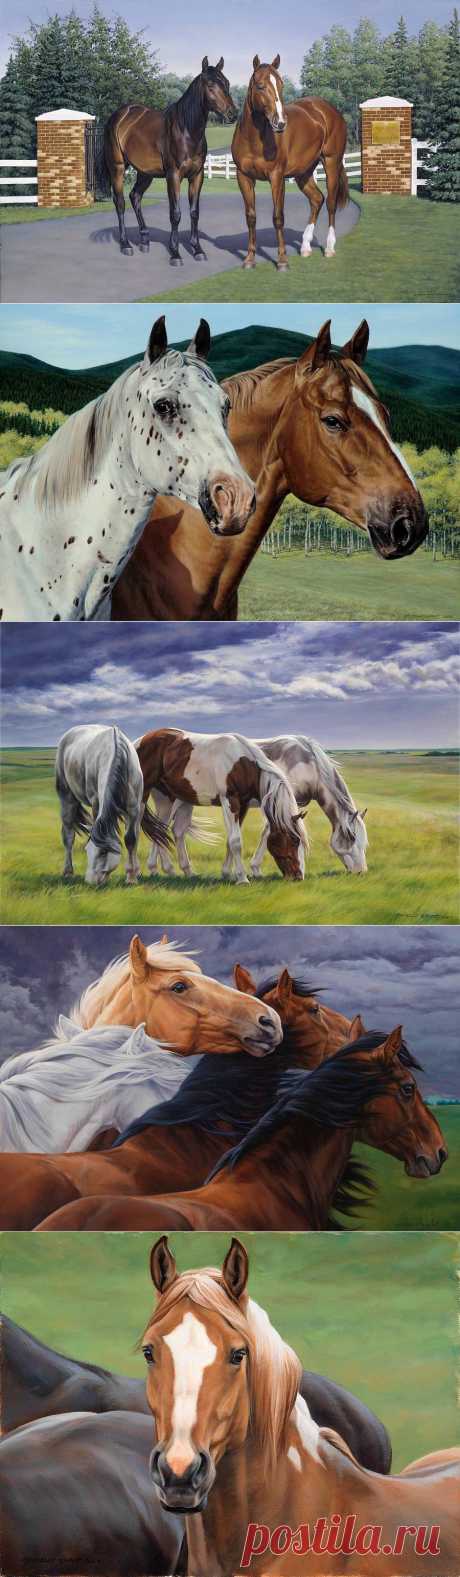 Канадская художница Michelle Grant.Лошади...